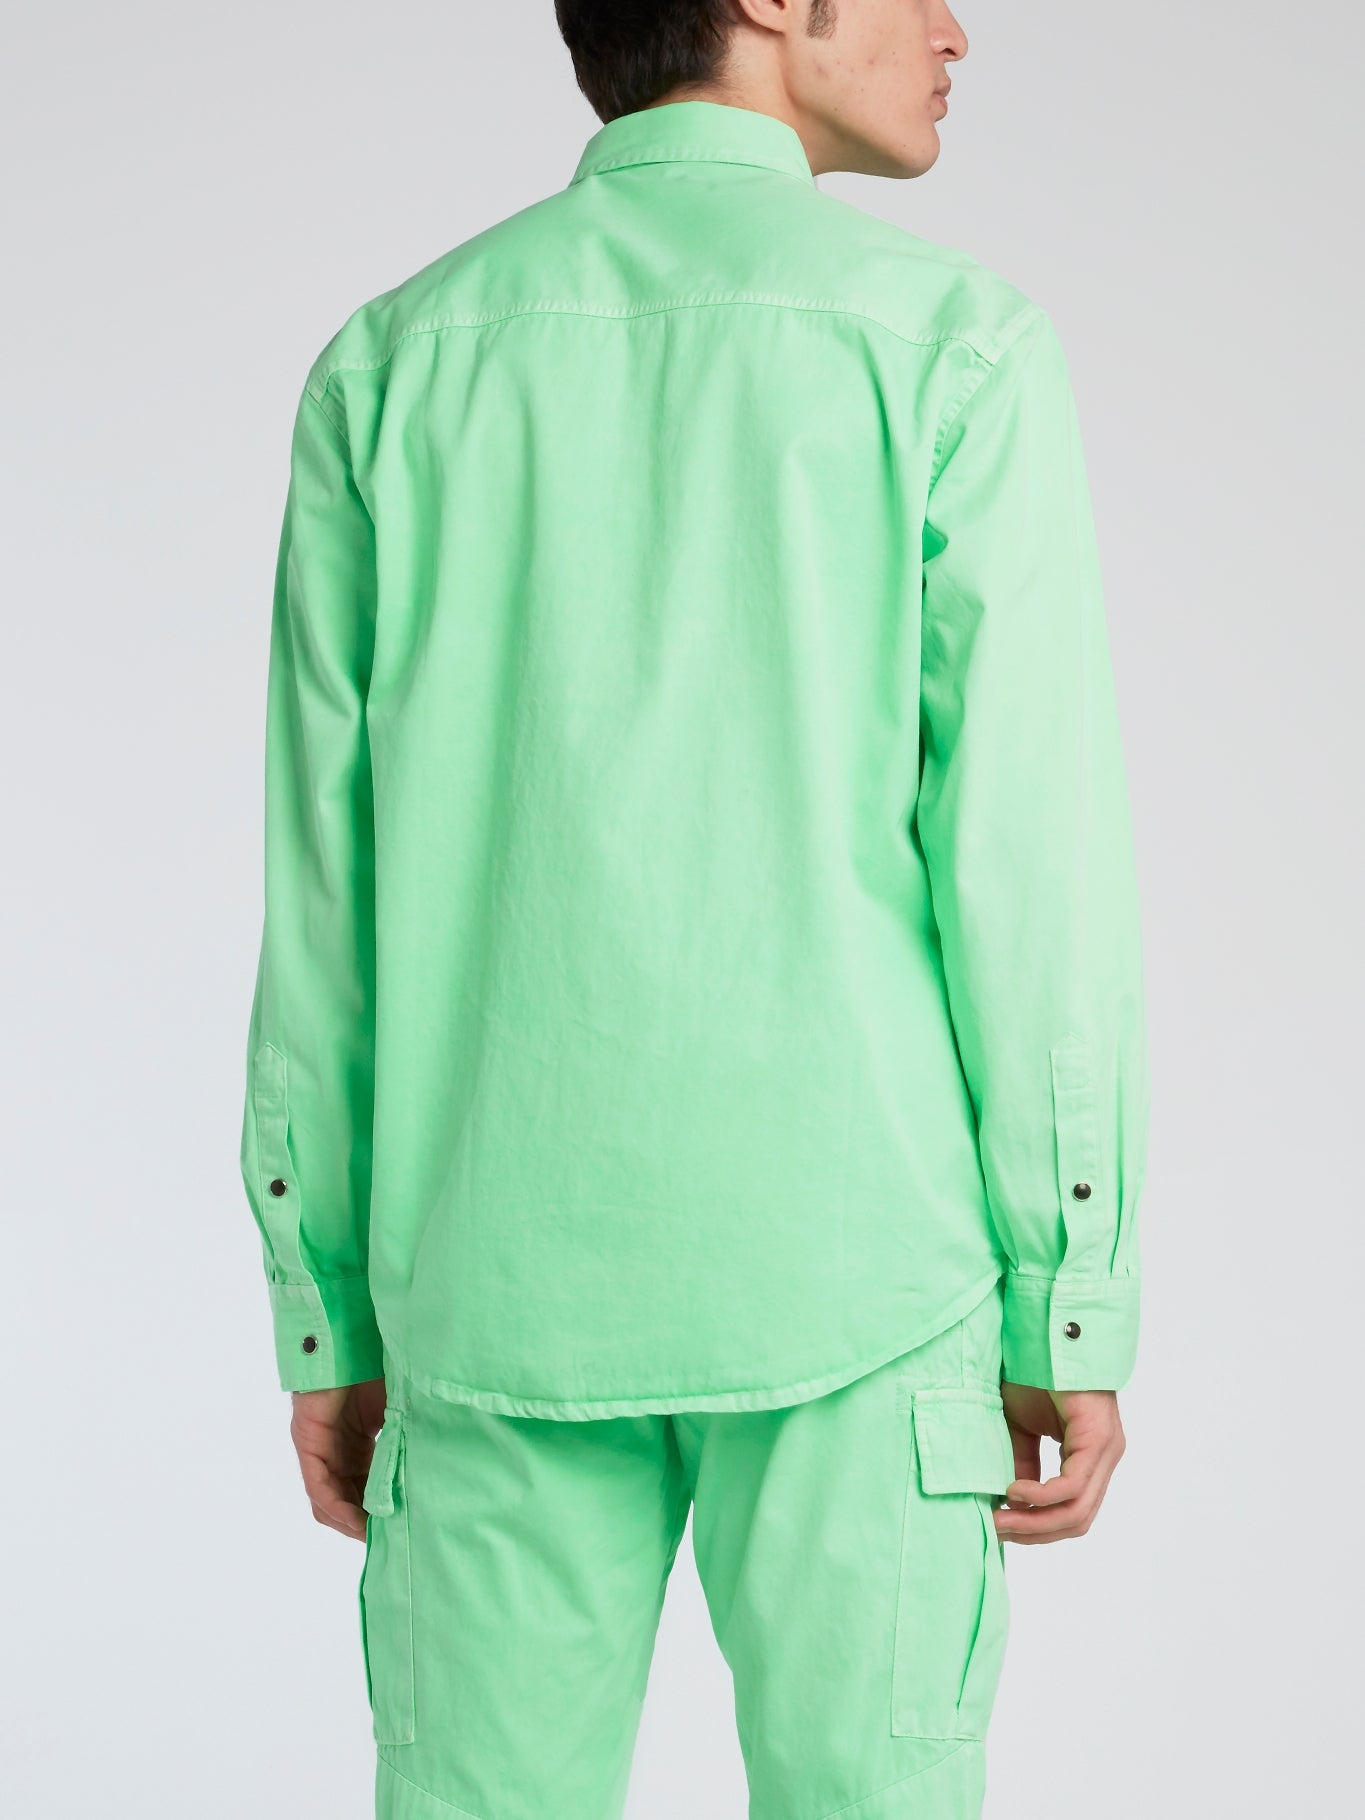 Neon Green Button Up Shirt